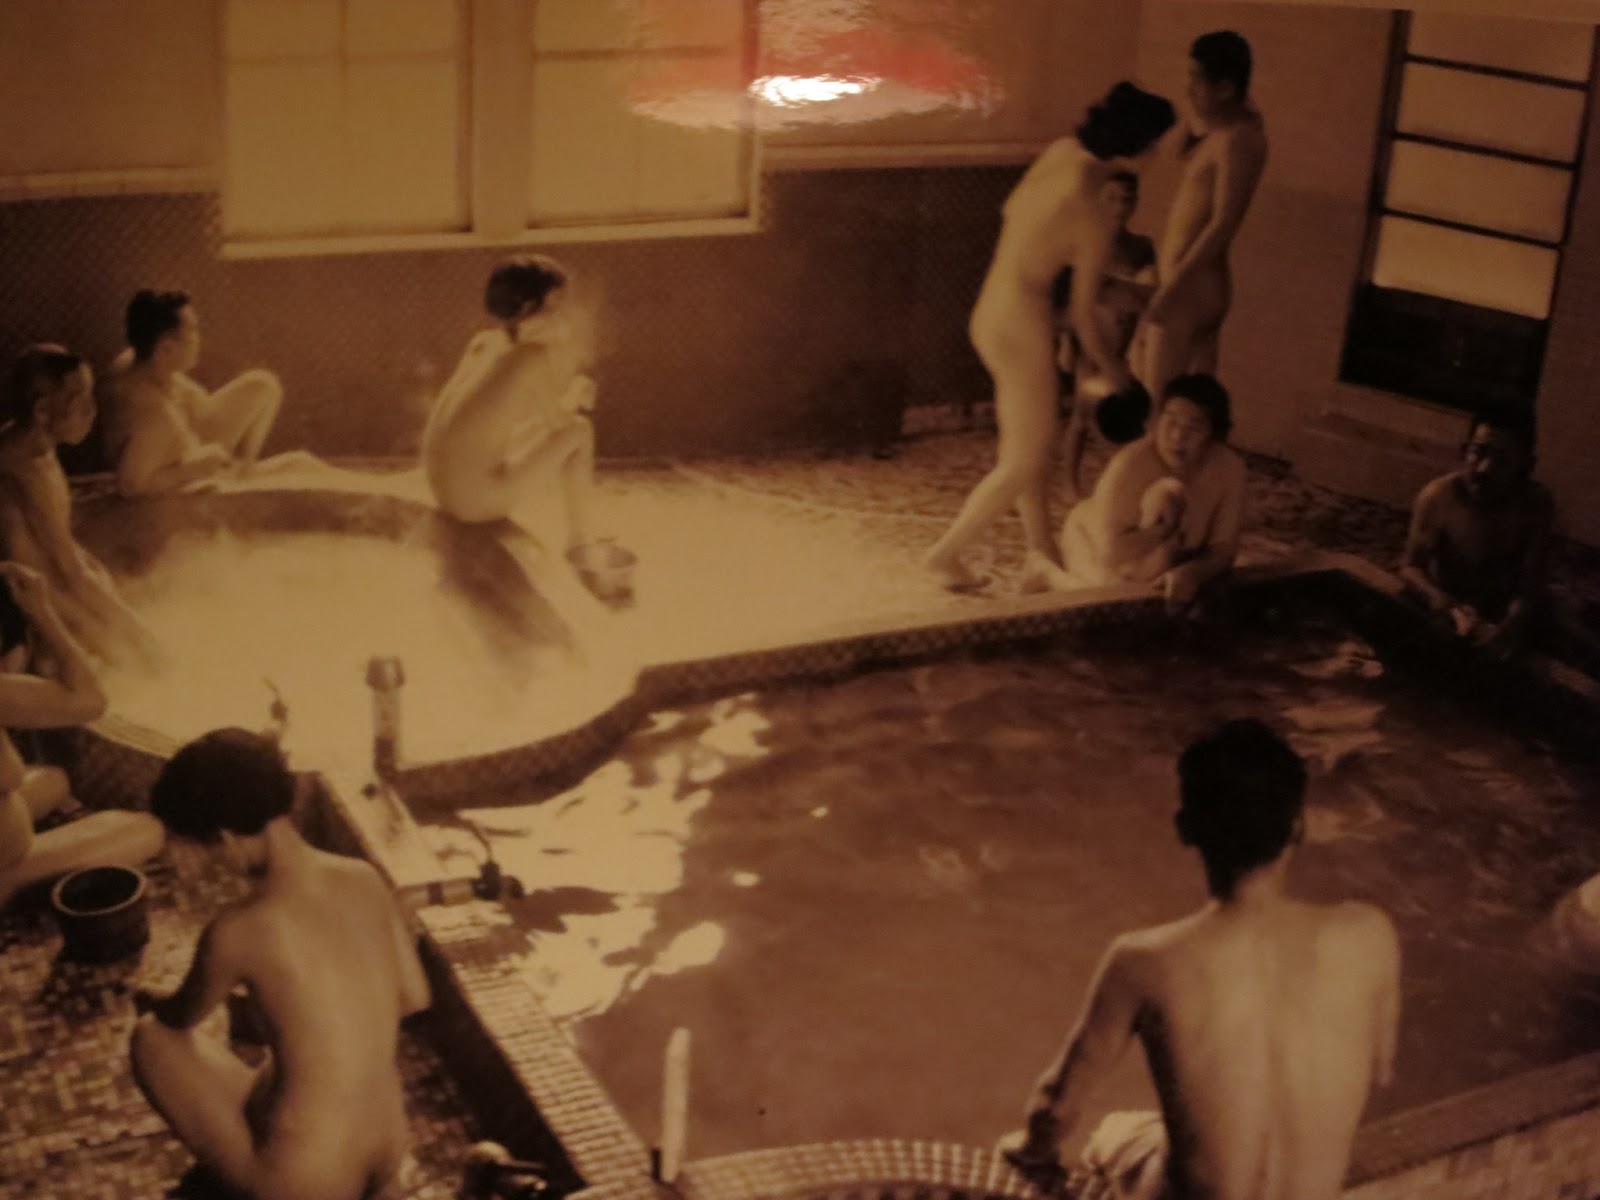 Voyeur pics of baths - Adult archive